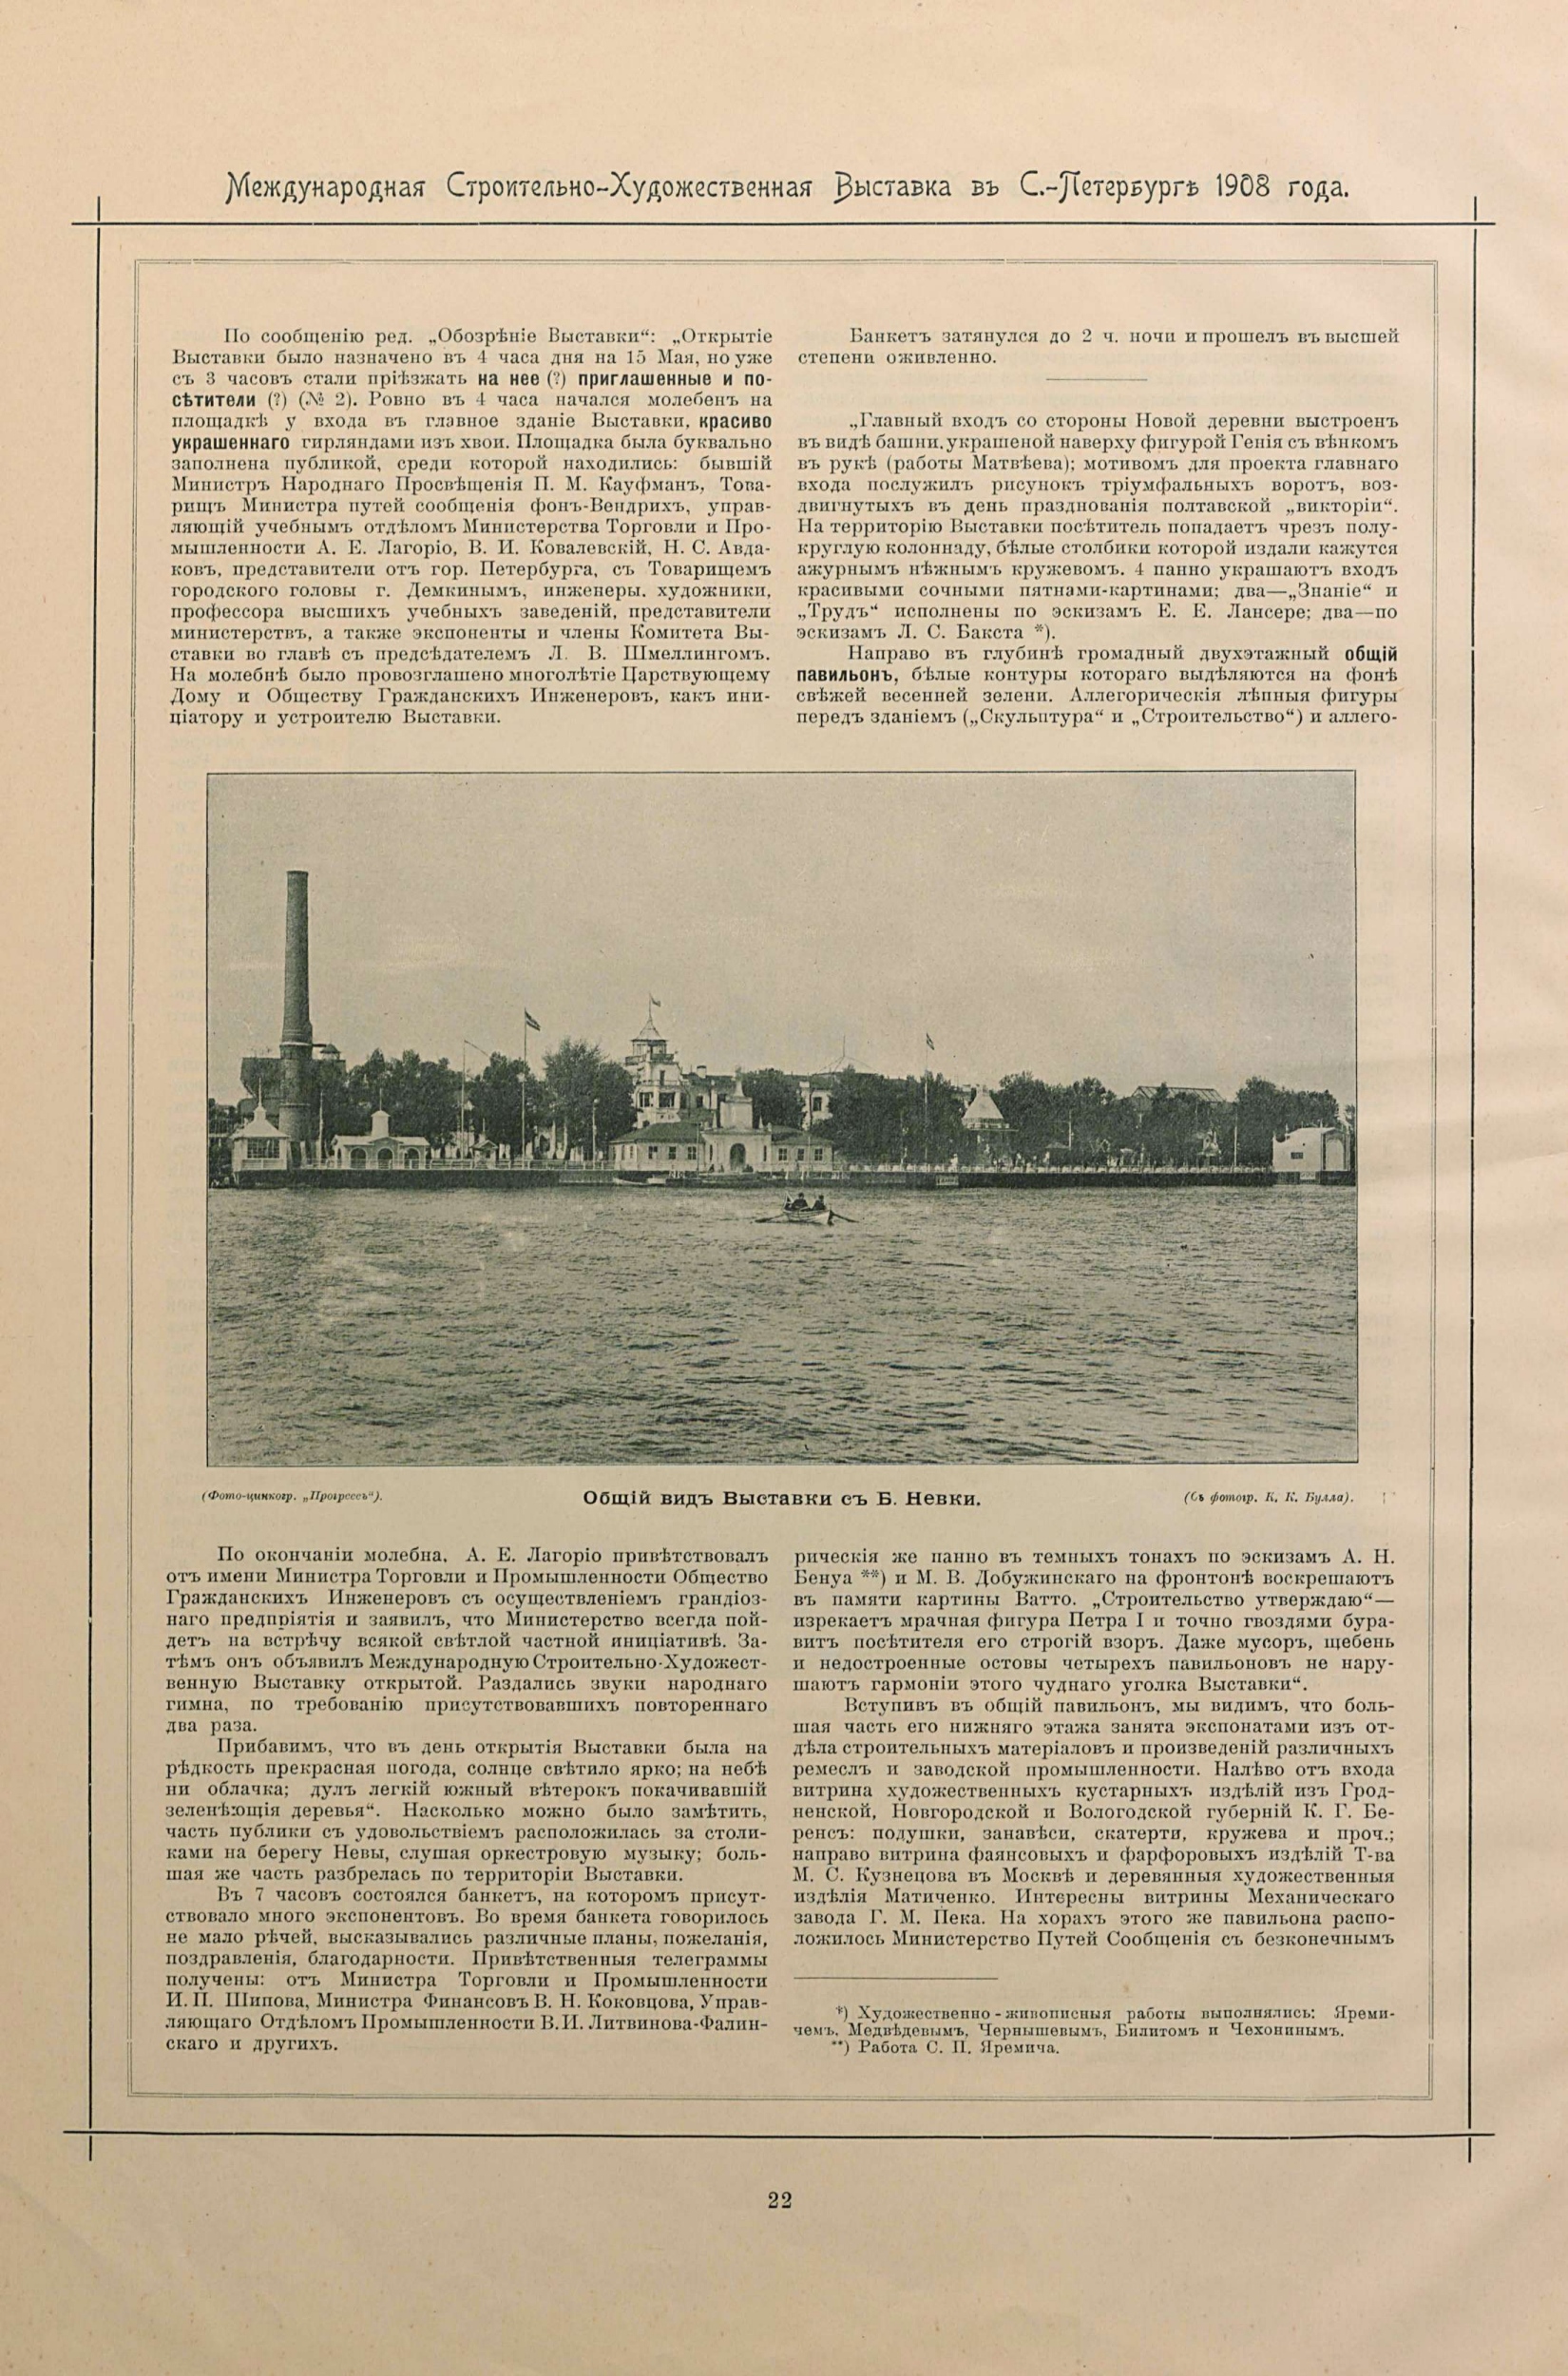 Альбом Международной строительно-художественной выставки в С.-Петербурге. 1908